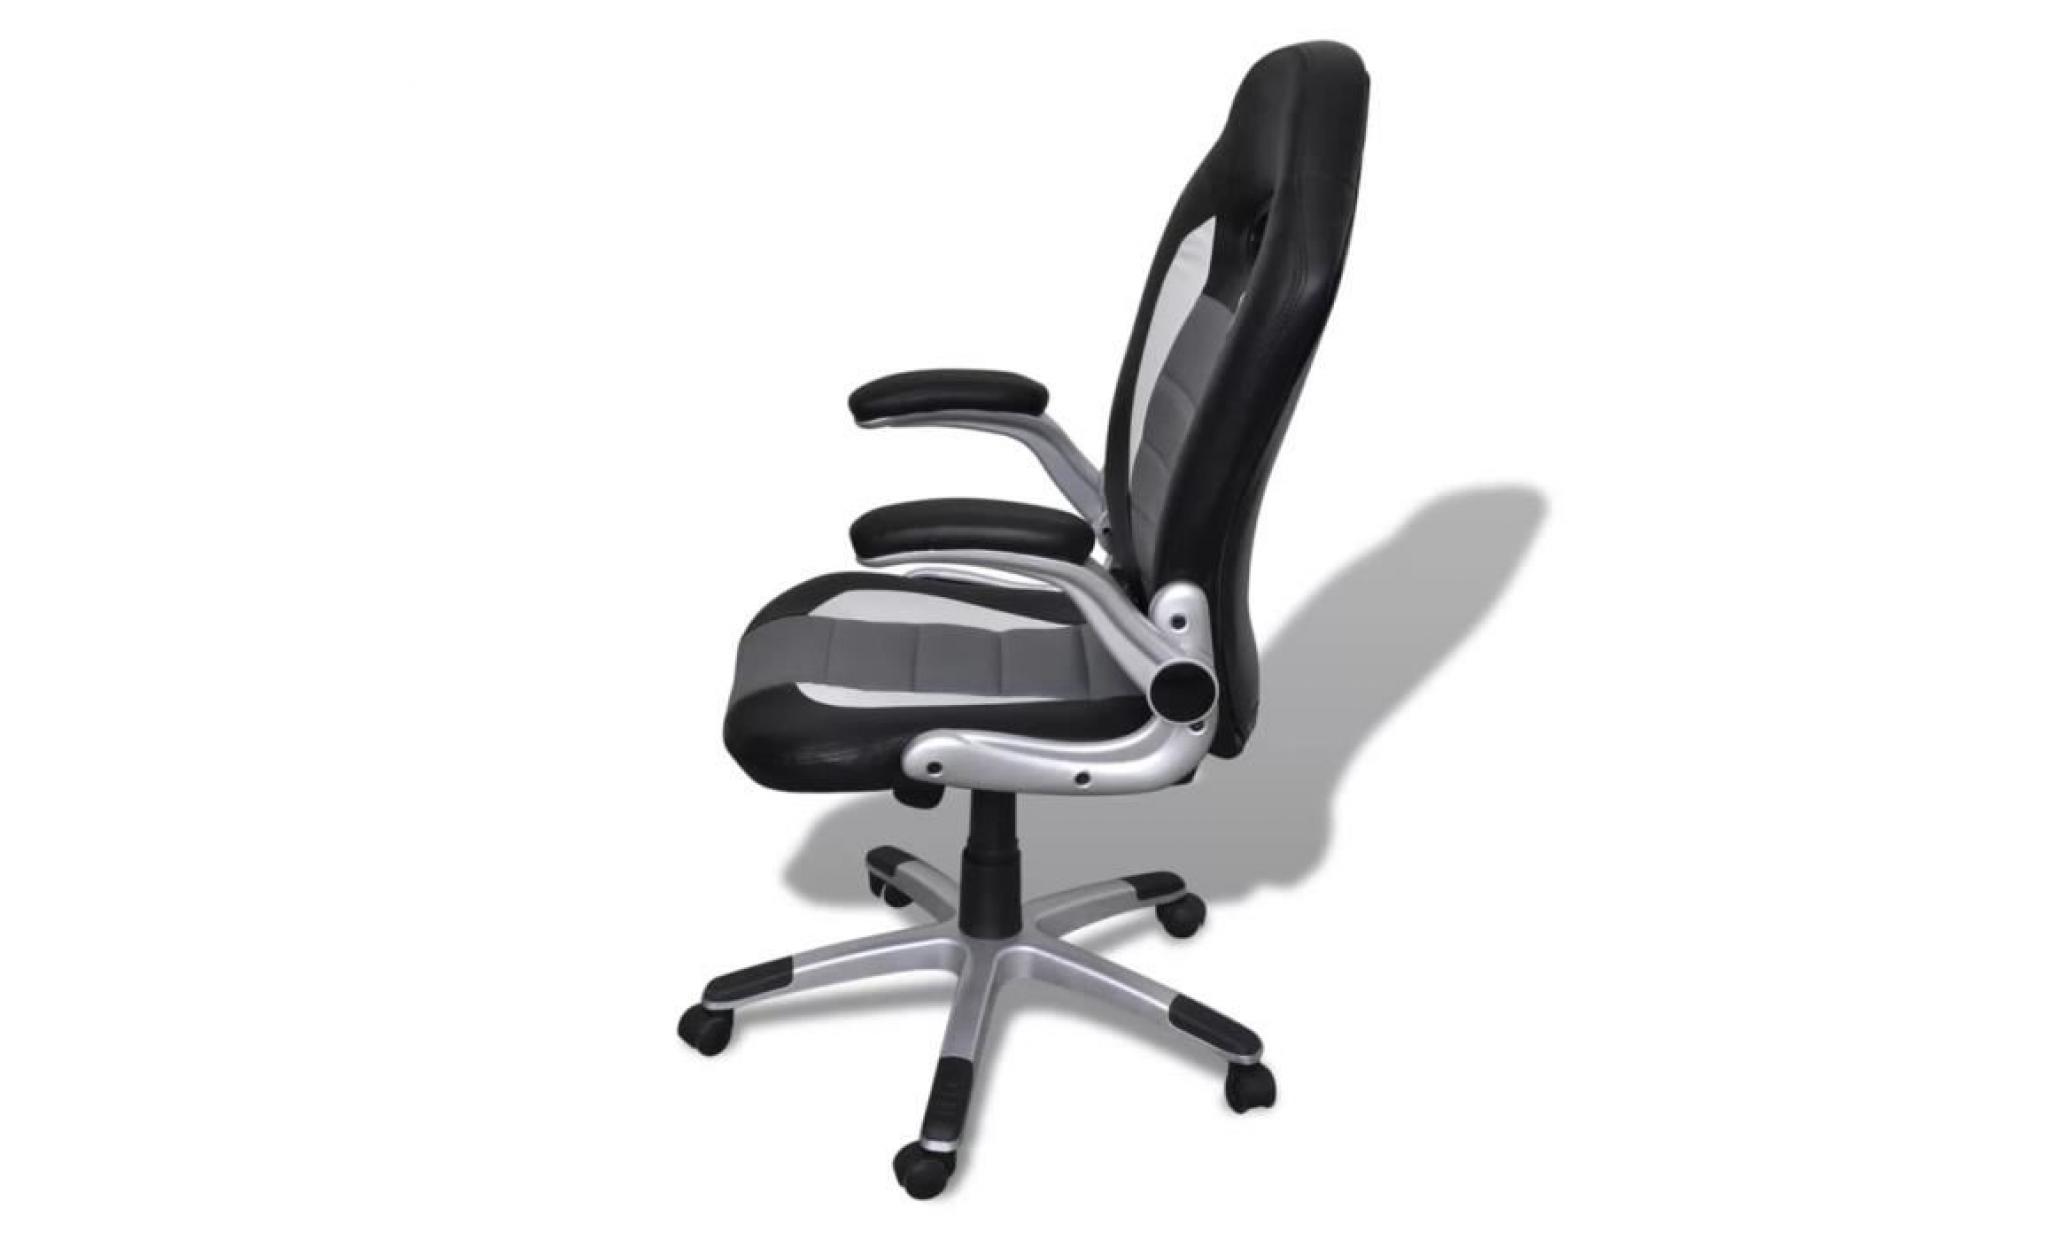 fauteuil de bureau sièges 63 x 70 x 114  124 cm chaise de bureau scandinave contemporainengris design moderne pas cher